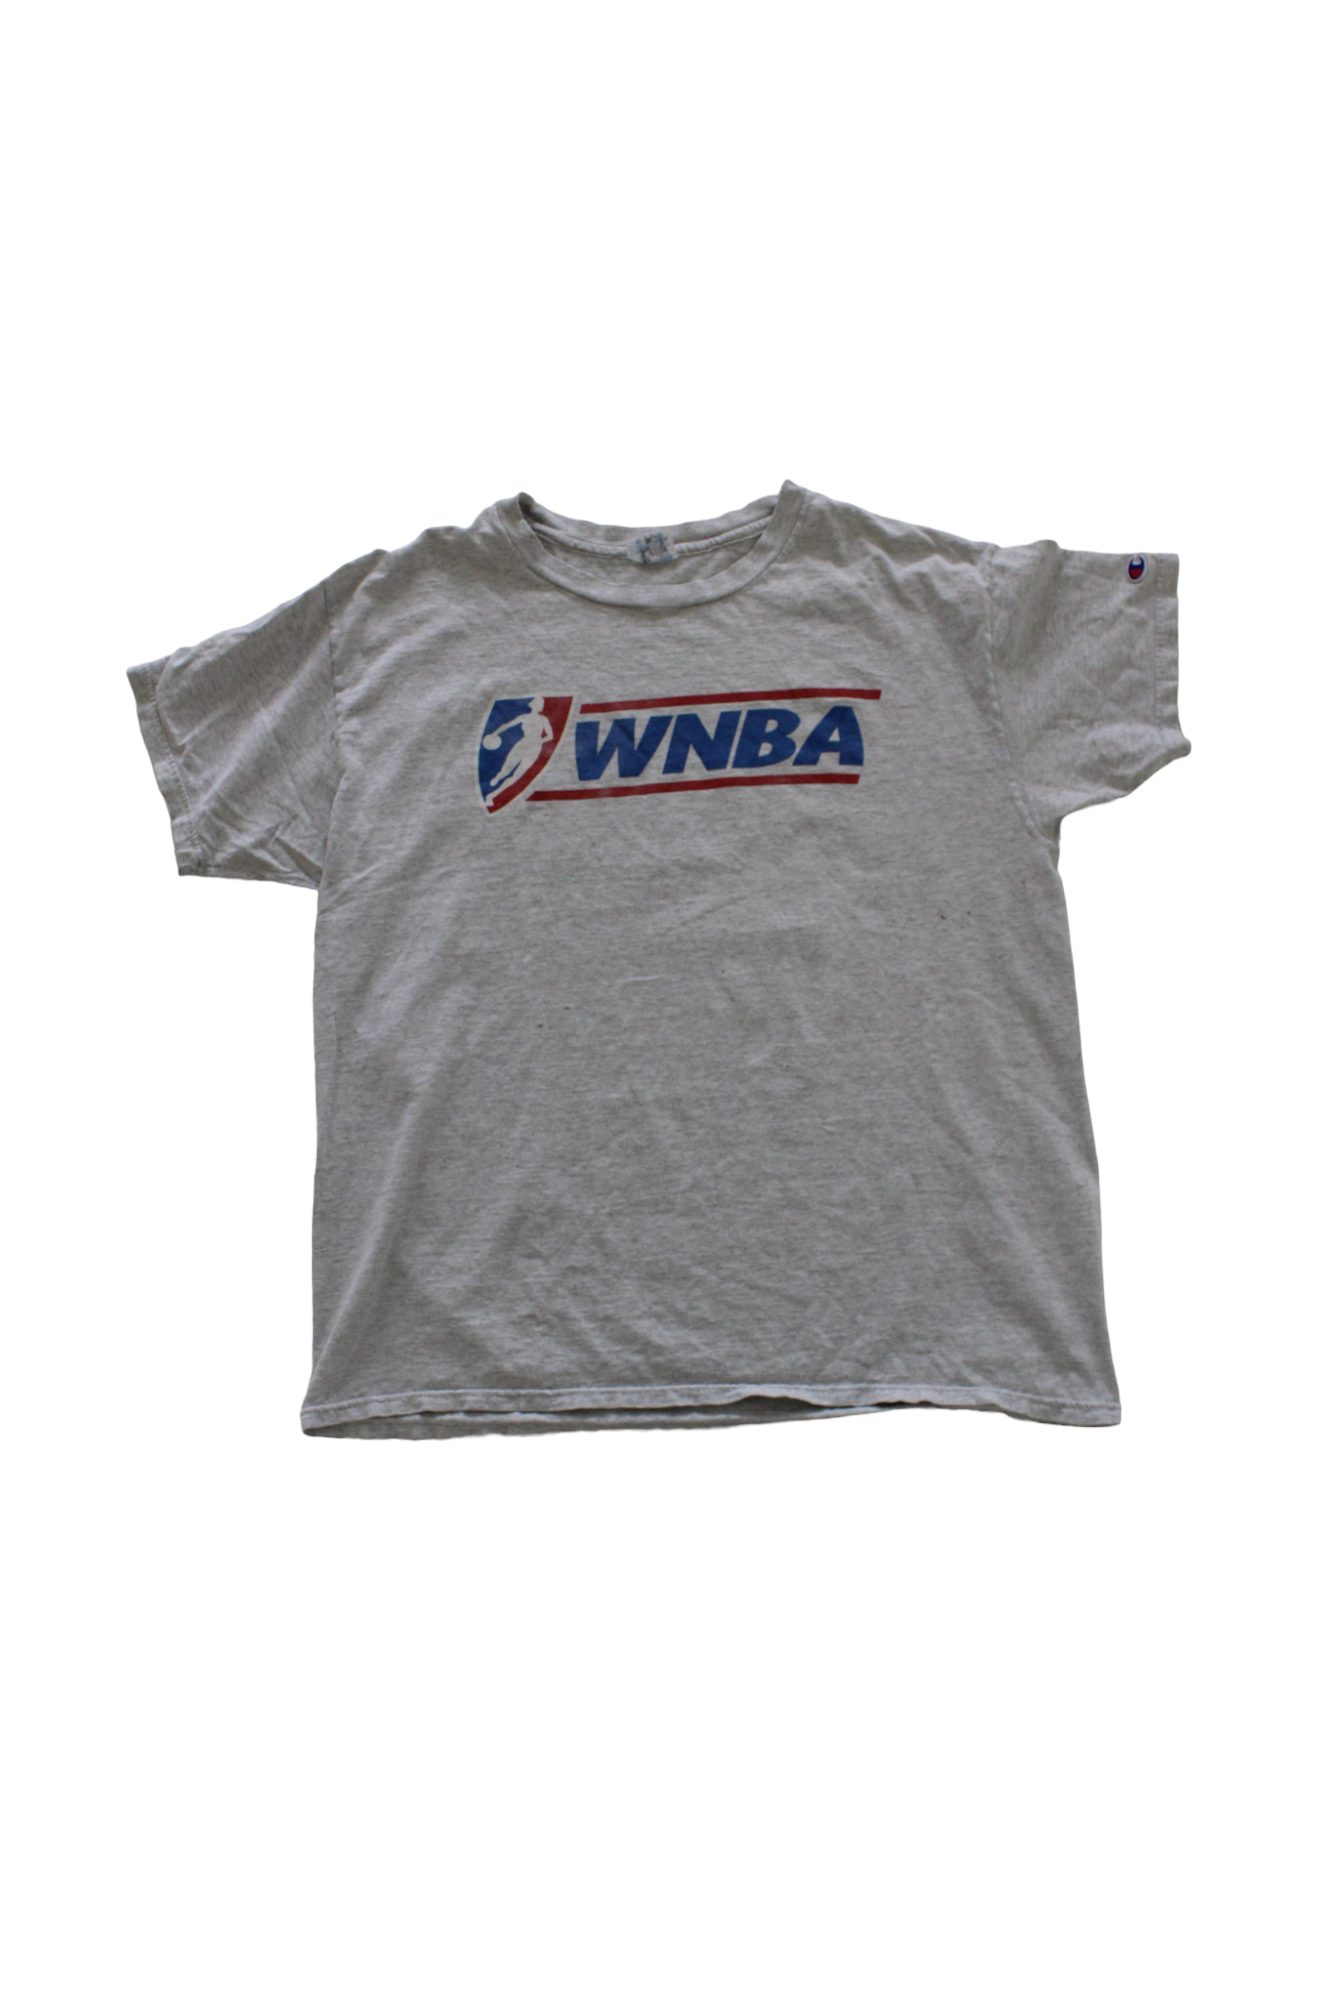 Vintage WNBA Champion 90s Logo T-Shirt